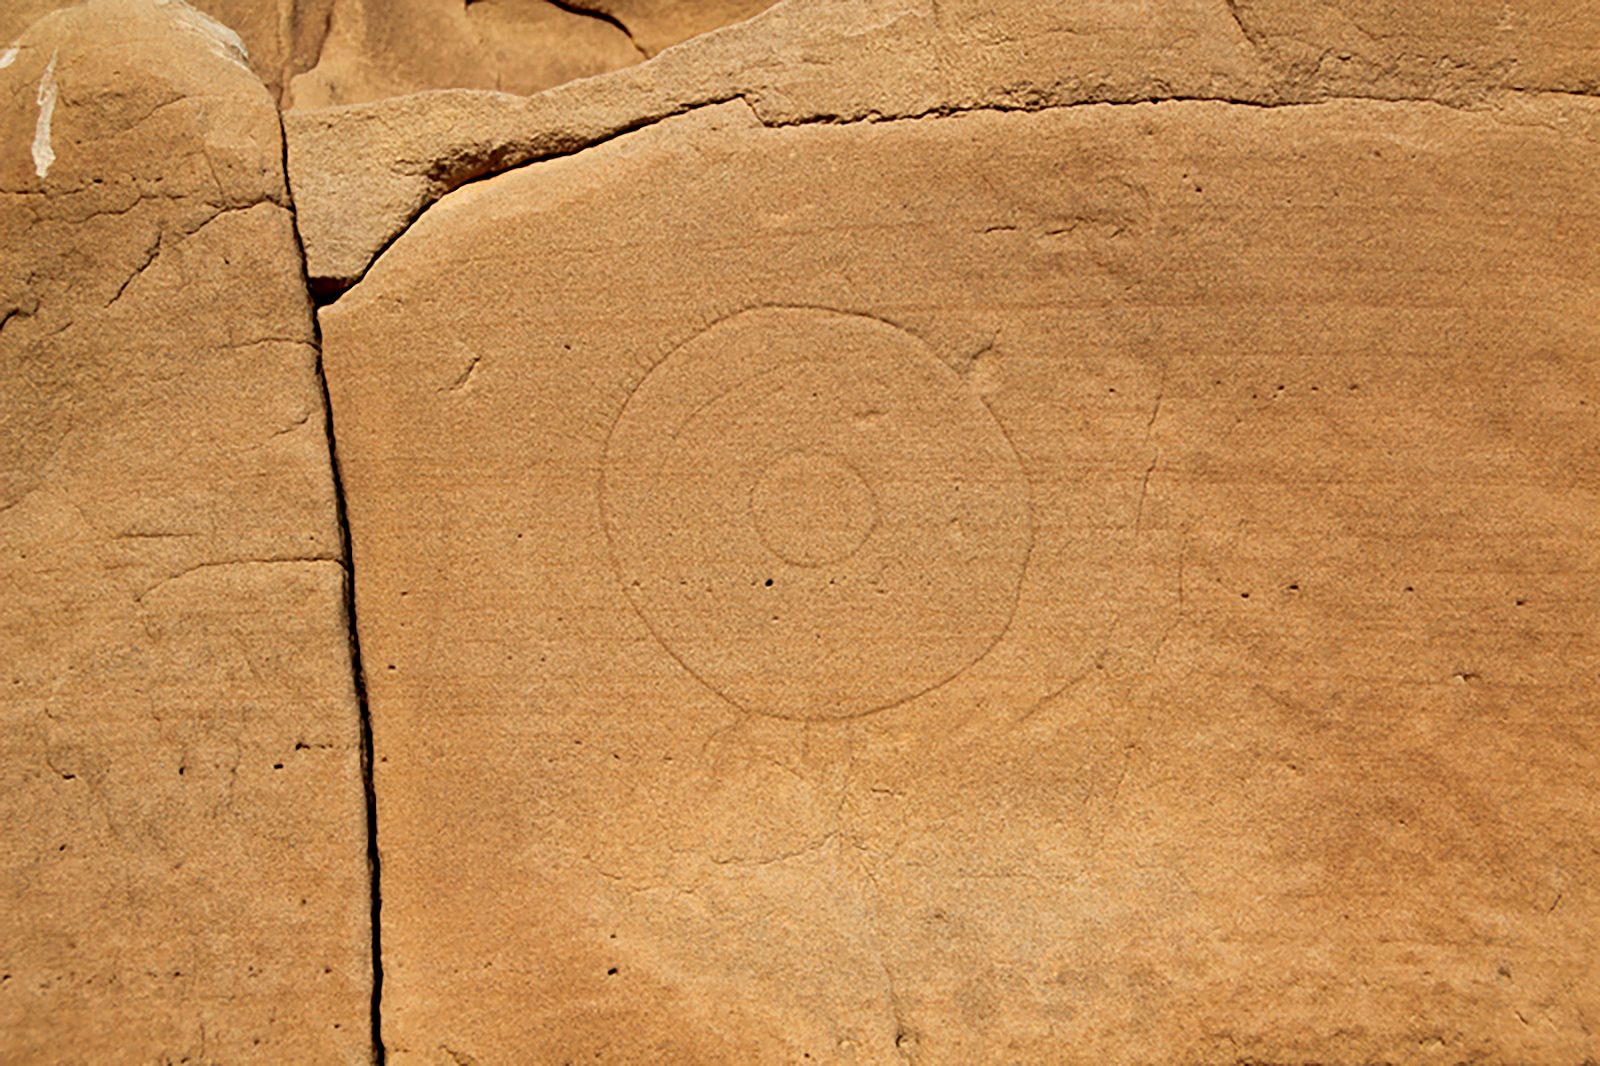 Petroglyphs Pictographs Rock Art Writing-On-Stone Áísínai'pi Provincial Park Canada